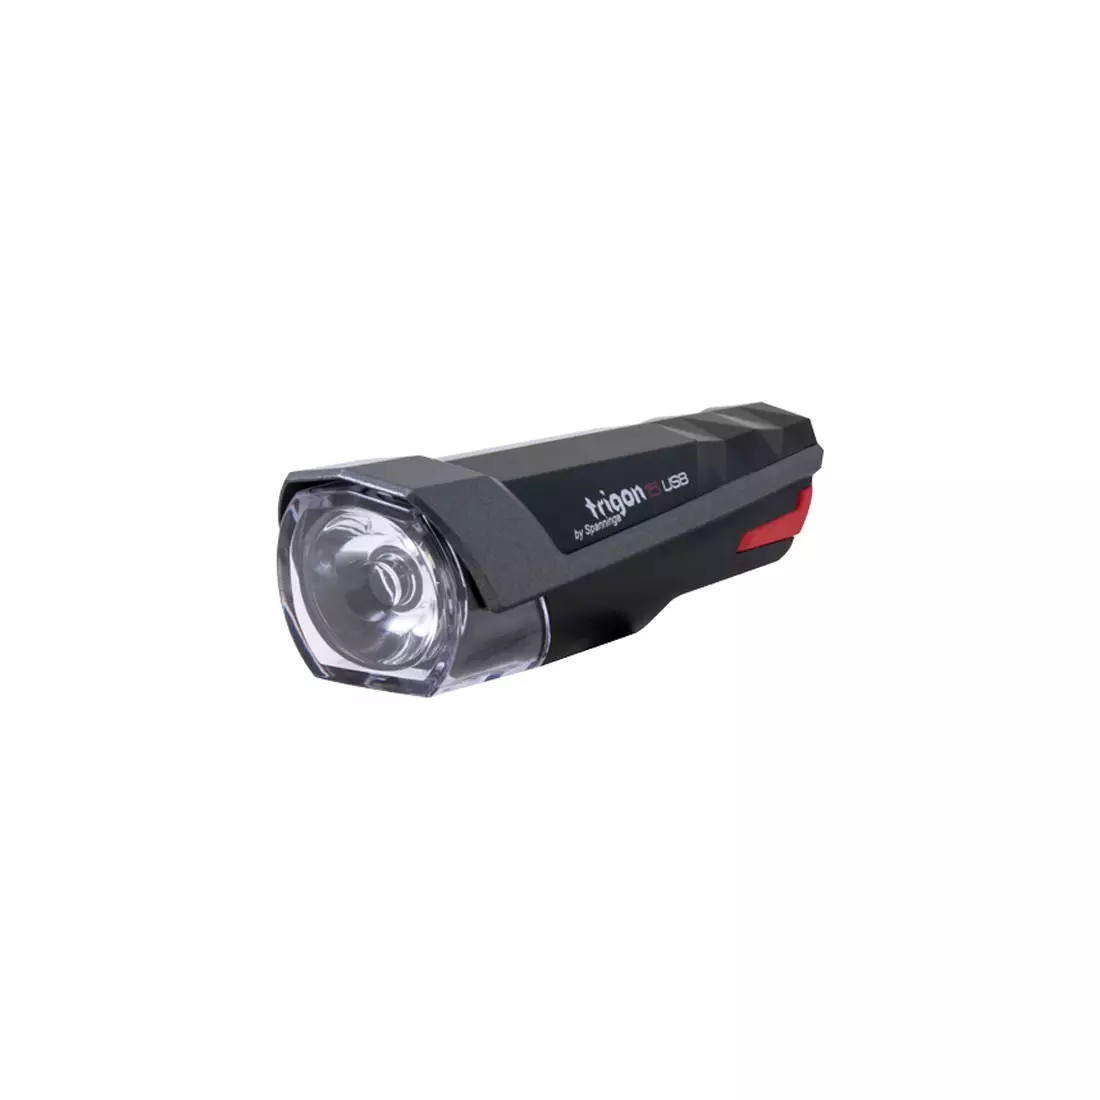 Přední světlo SPANNINGA TRIGON 15 luxów/80 lumeny USB Černá SNG-999154